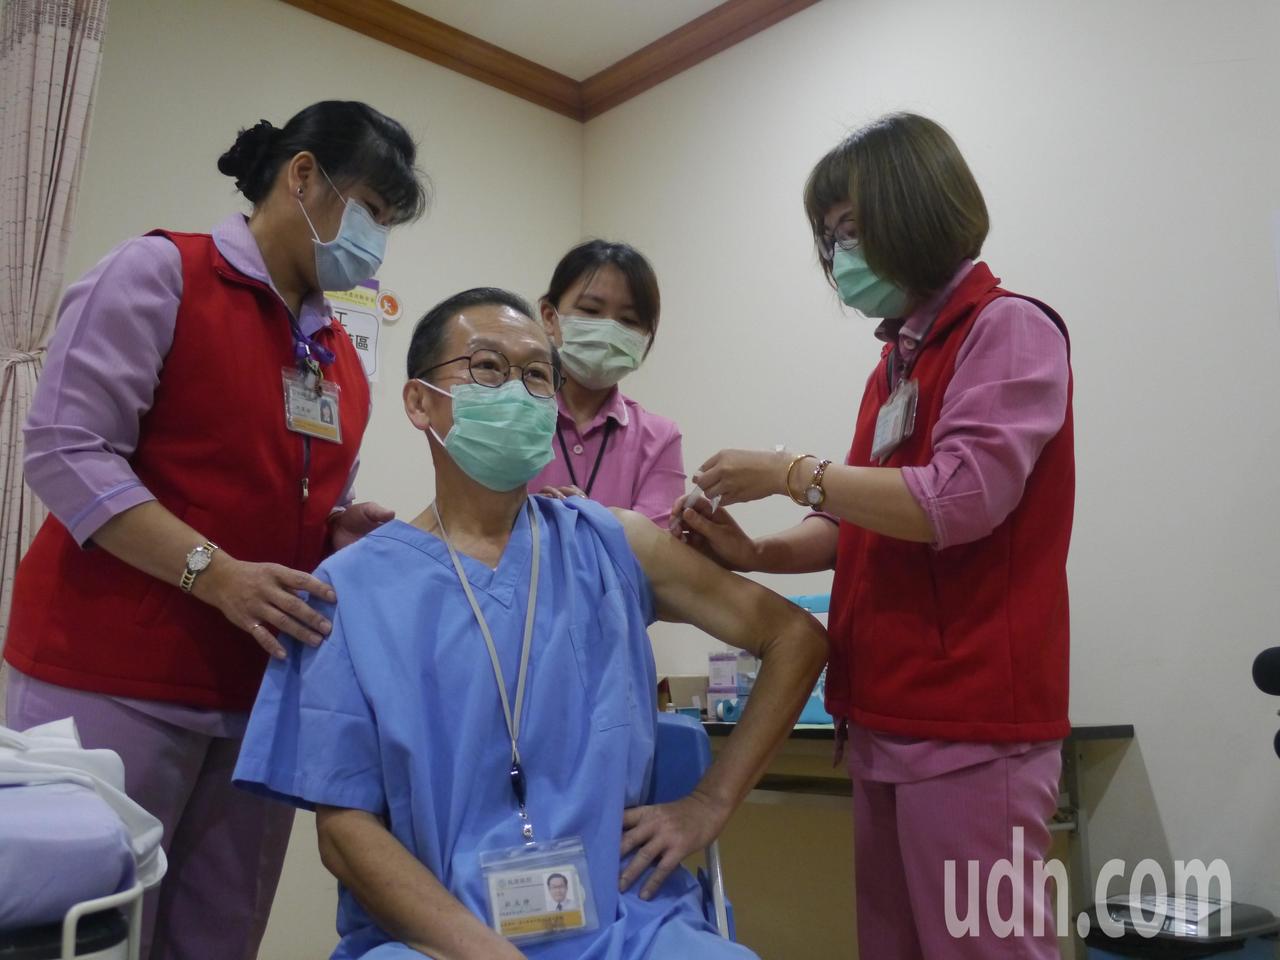 義大醫院院長杜元坤今早帶頭施打疫苗。記者徐白櫻／攝影